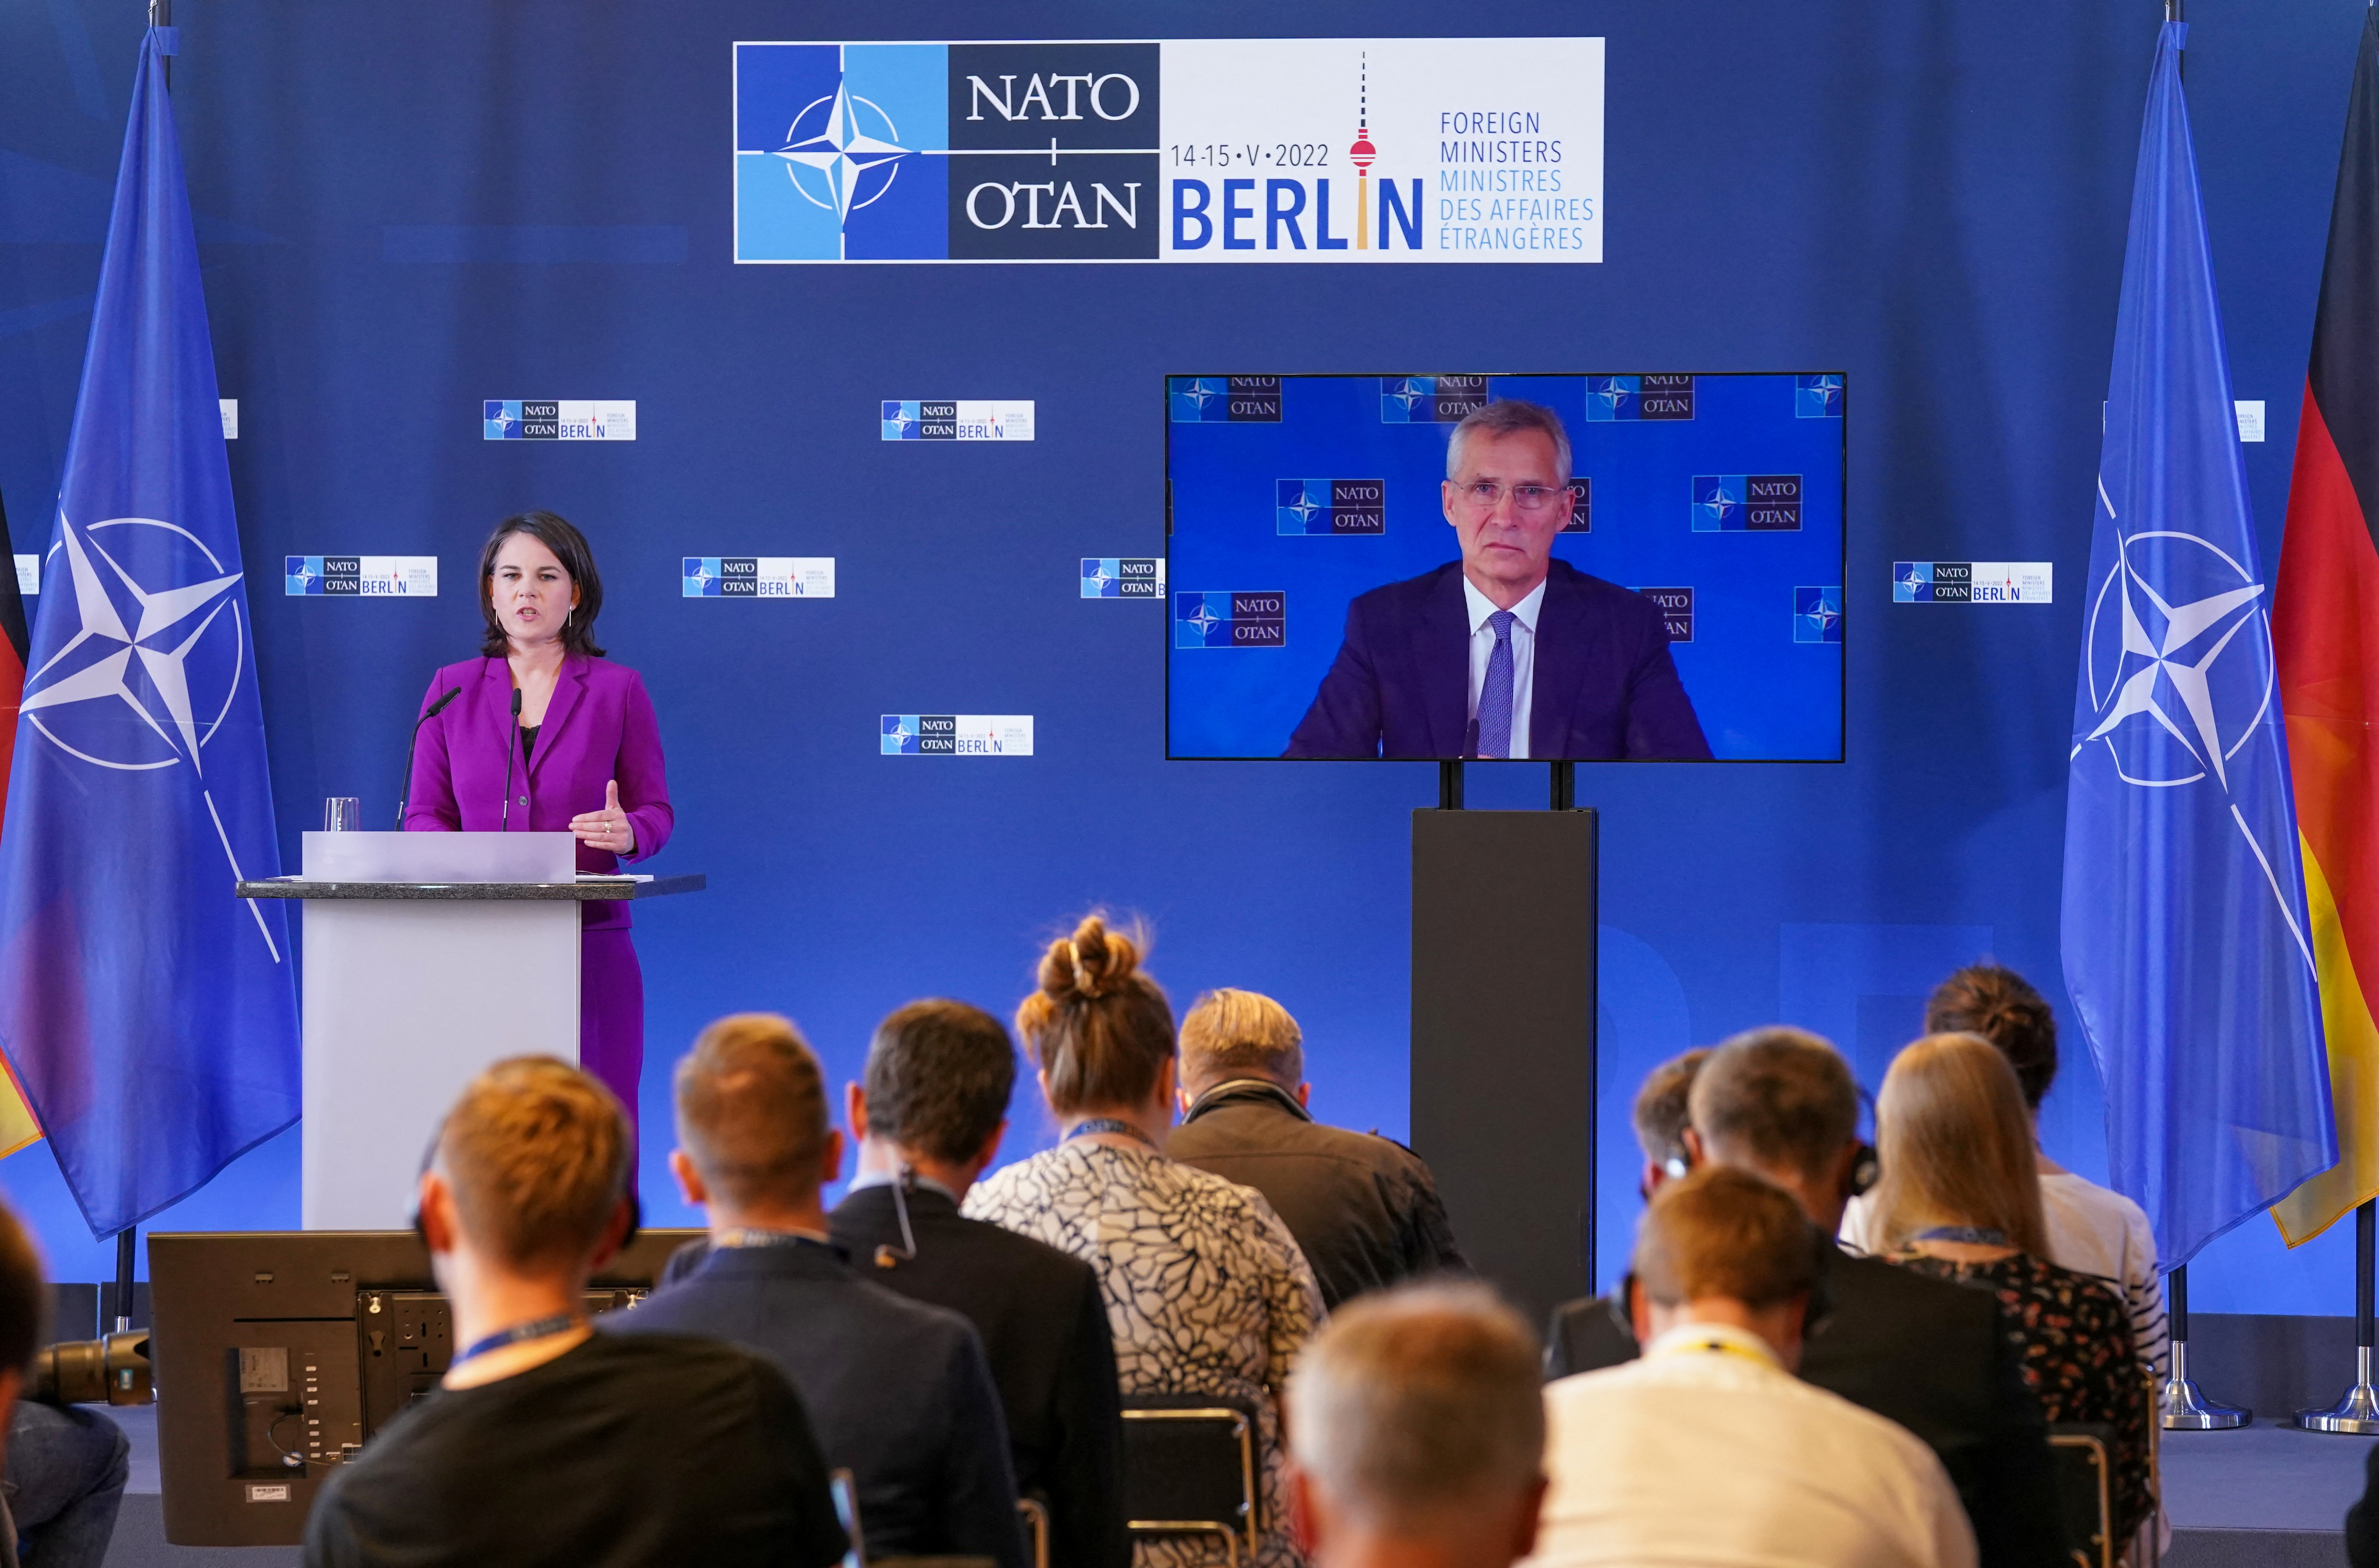 La ministra de Relaciones Exteriores de Alemania, Annalena Baerbock, habla durante una conferencia de prensa con el secretario general de la OTAN, Jens Stoltenberg, durante una reunión de la OTAN en Berlín este domingo (REUTERS/Kevin Lamarque)